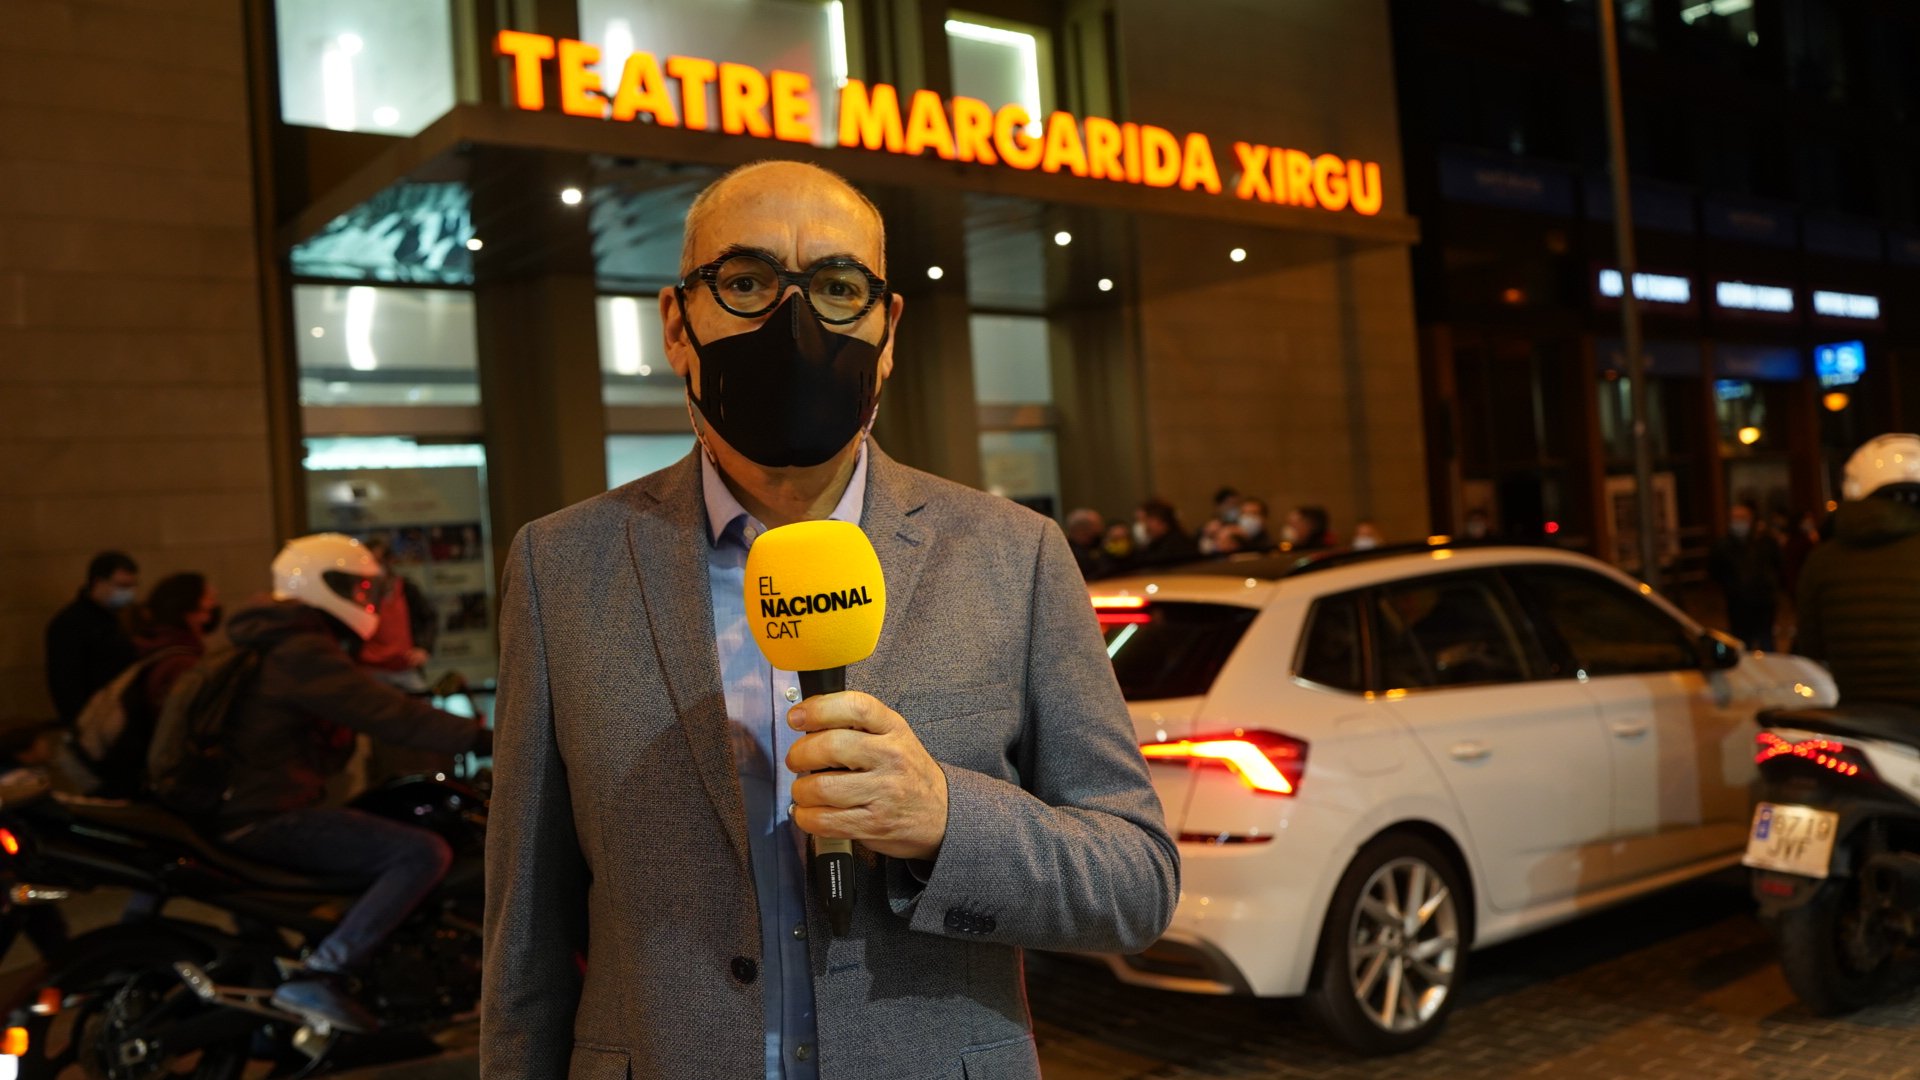 L'Iu-Tuber en la entrada de Oriol Junqueras en campaña